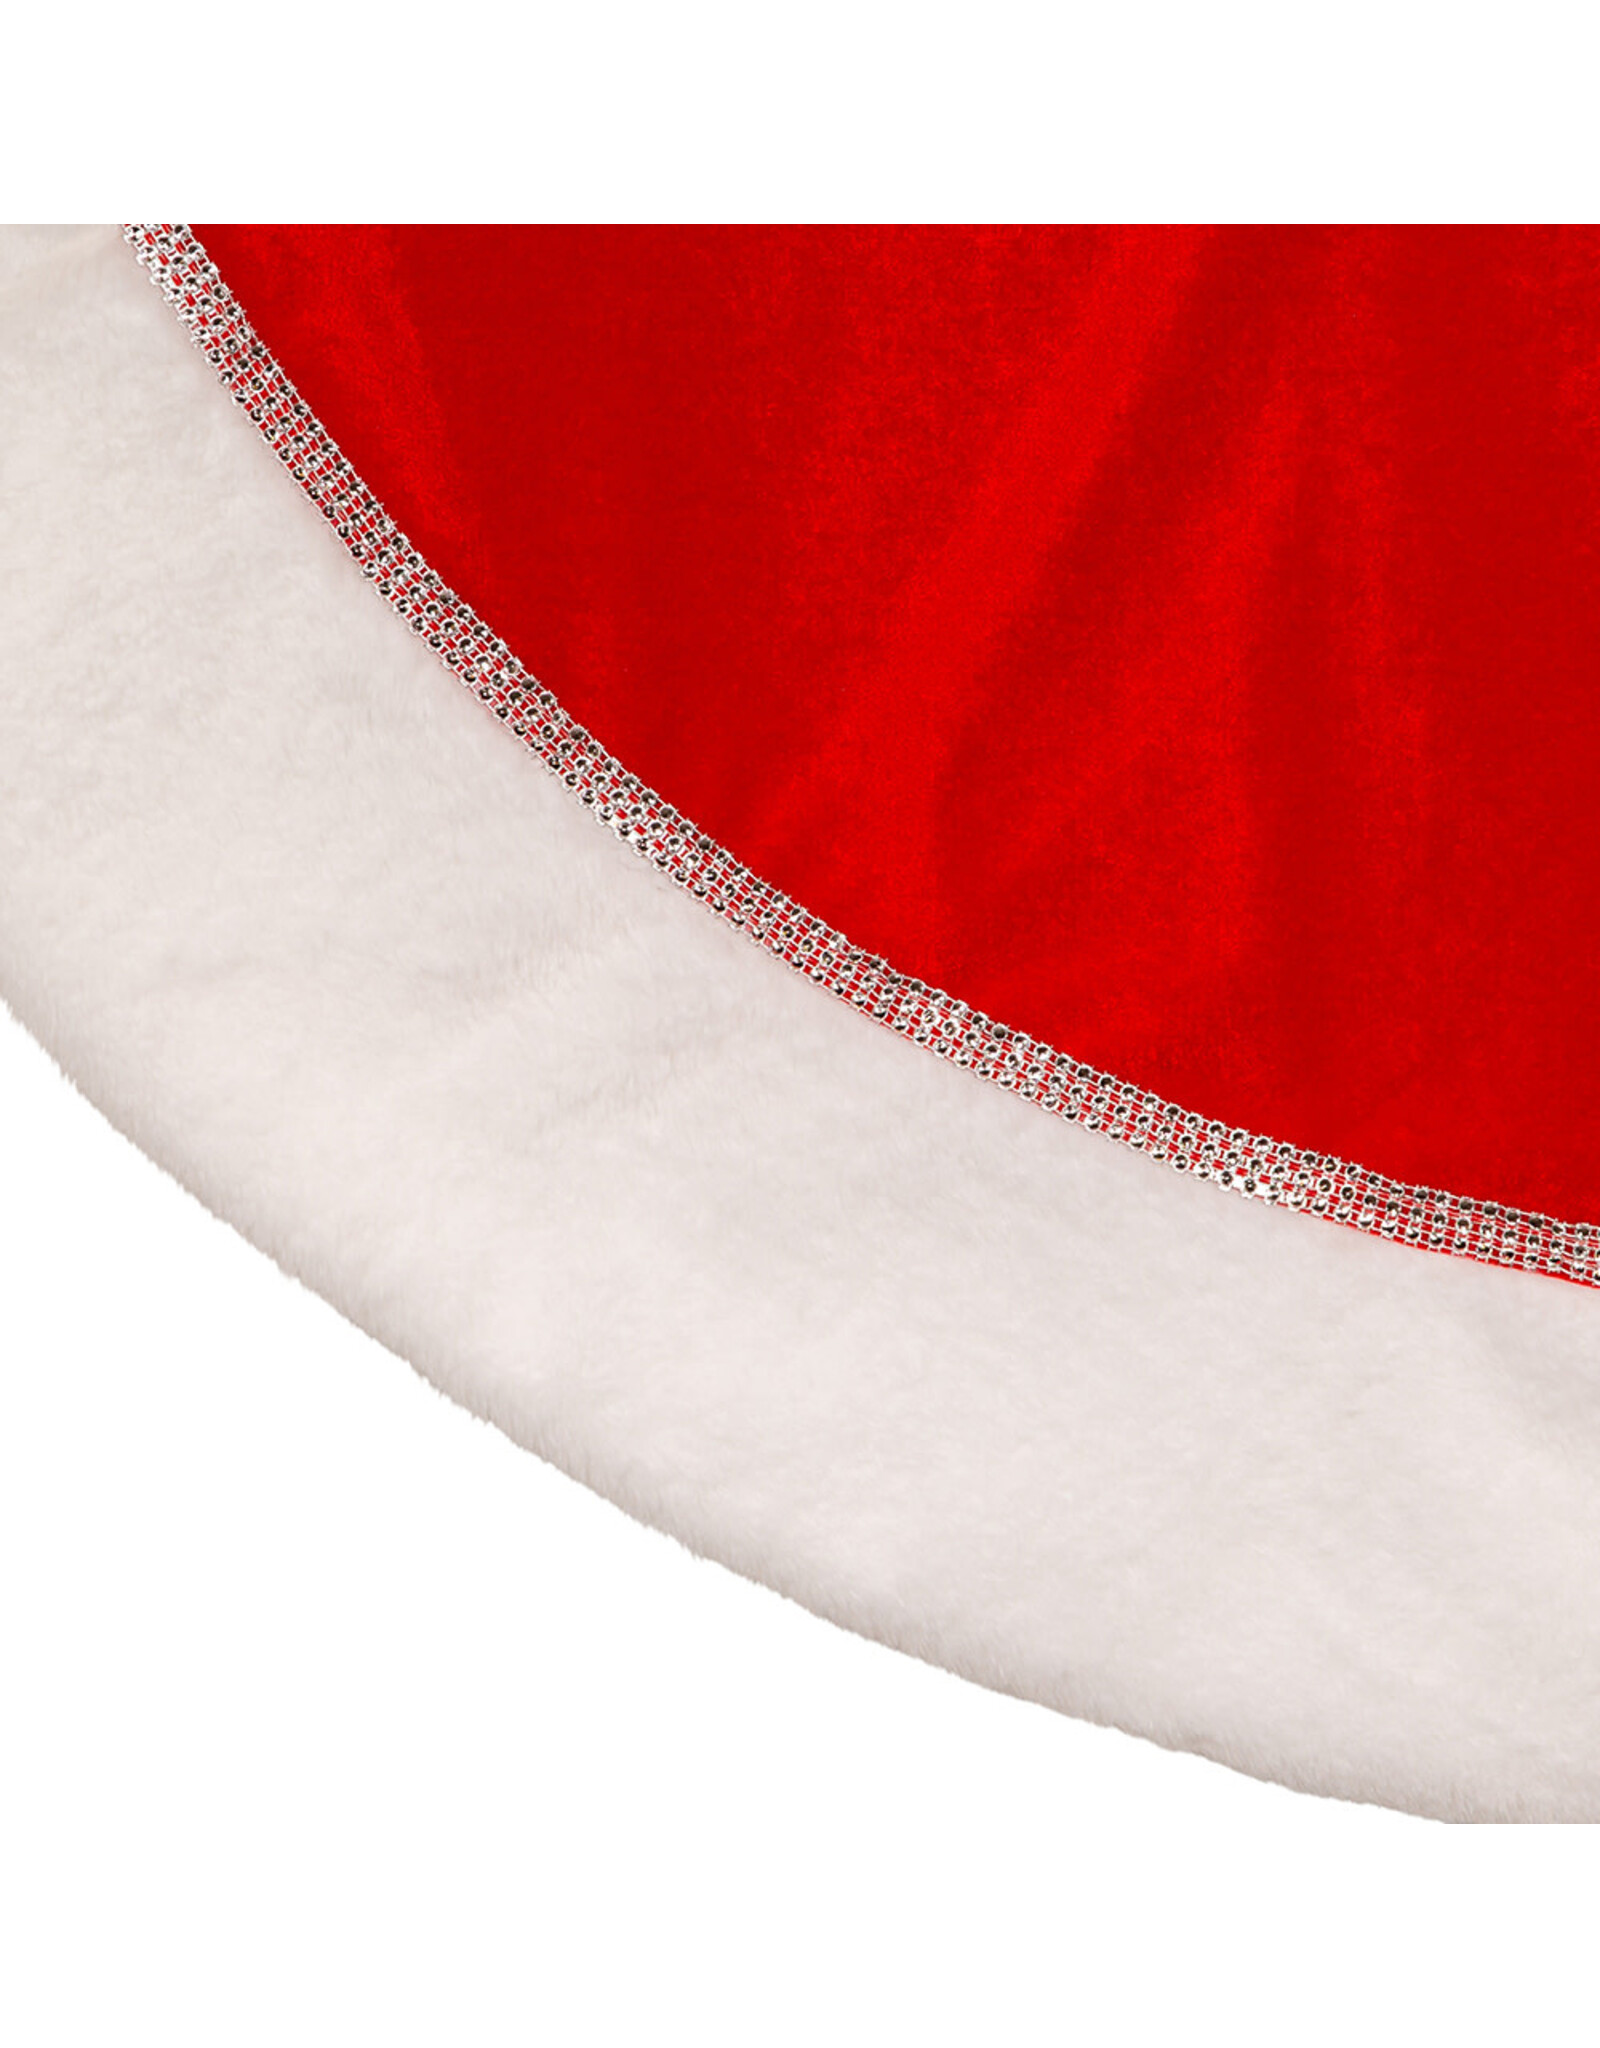 Kurt Adler Christmas Tree Skirts 48” Red w White Border Tree Skirt